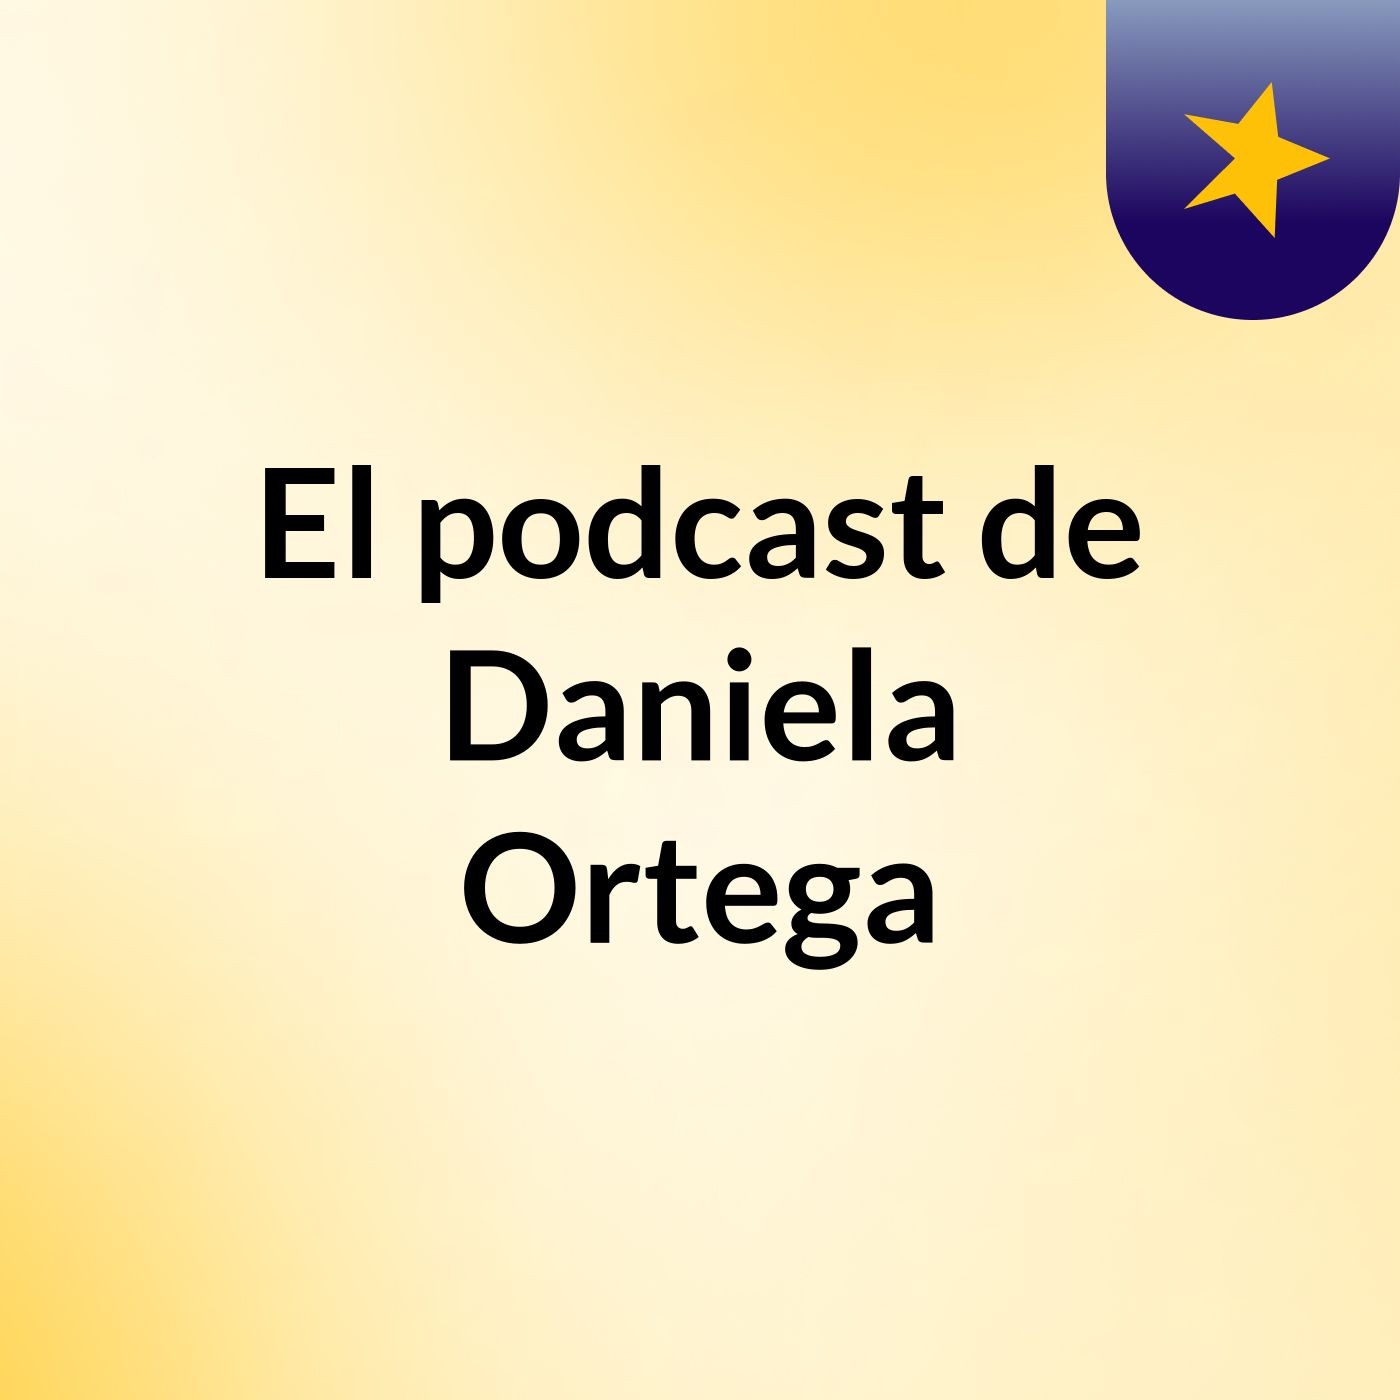 El podcast de Daniela Ortega